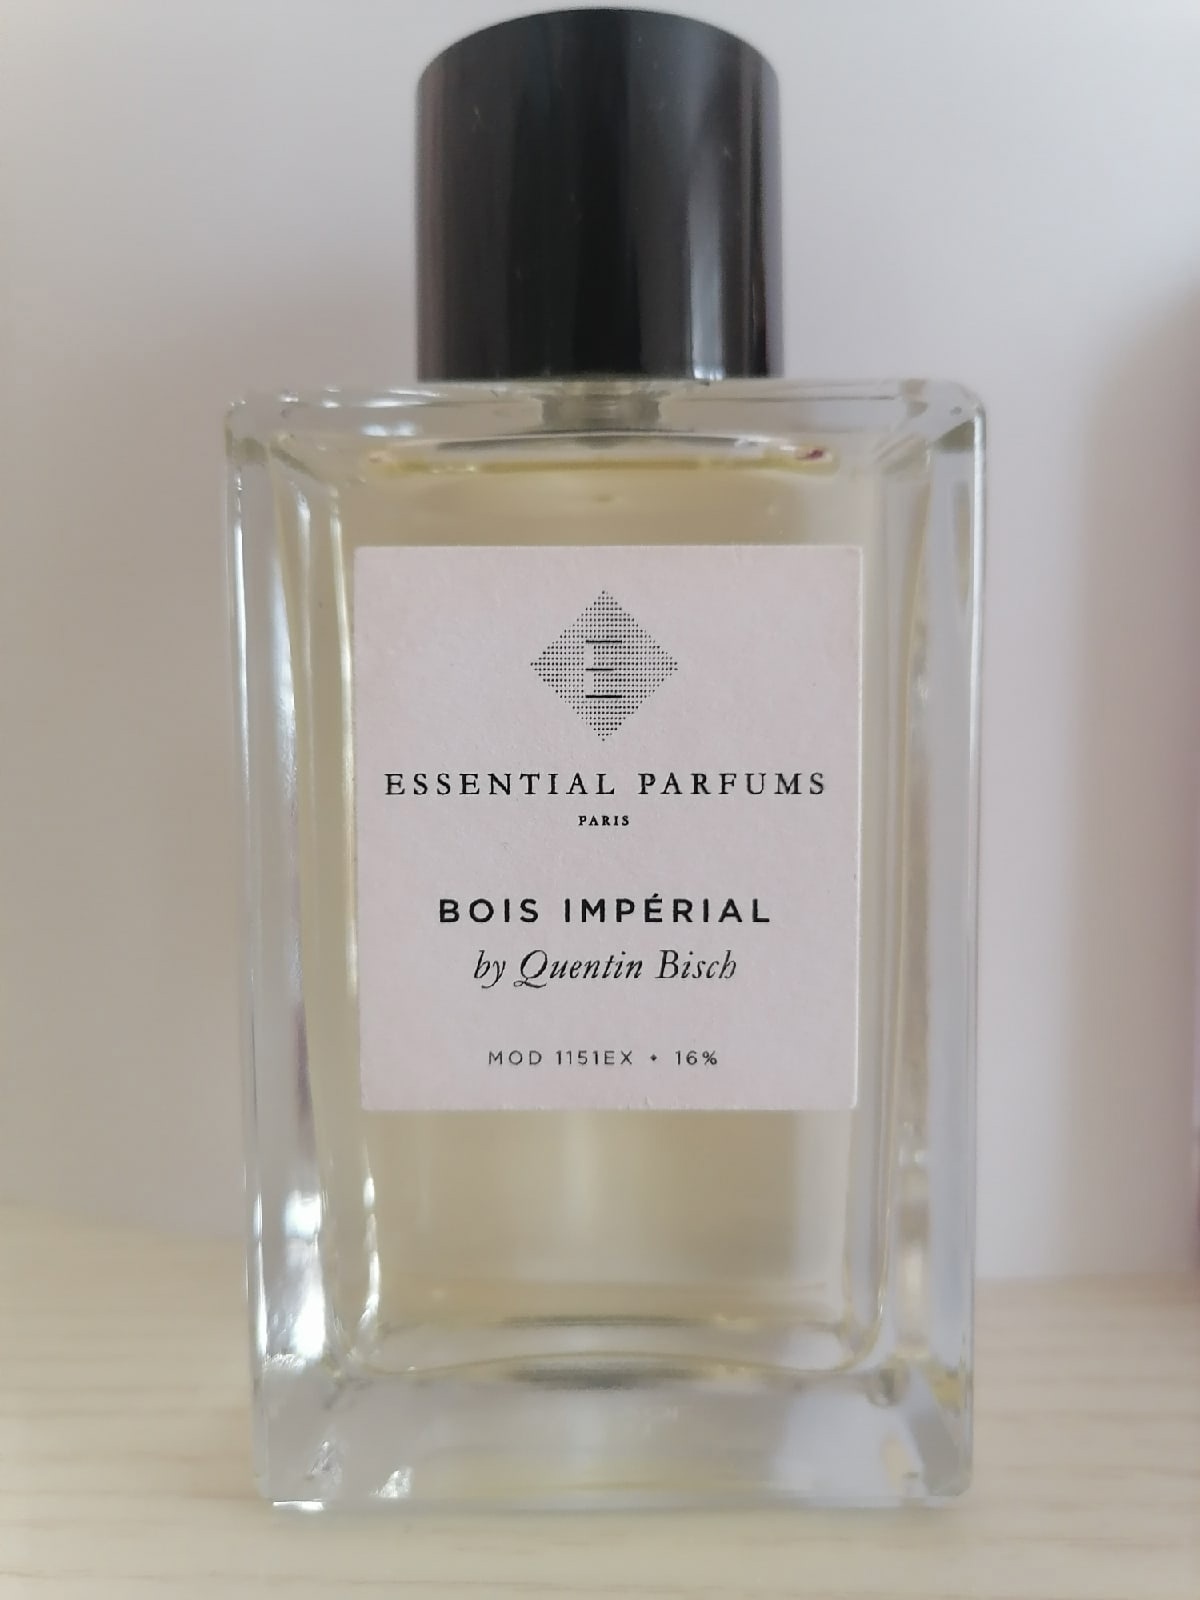 Эссенциале парфюм бойс. Парфюм bois Imperial. Essential Parfum bois Imperial. Essential Parfums bois Imperial 10 ml. Духи Эссеншиал Парфюм бойс Империал.